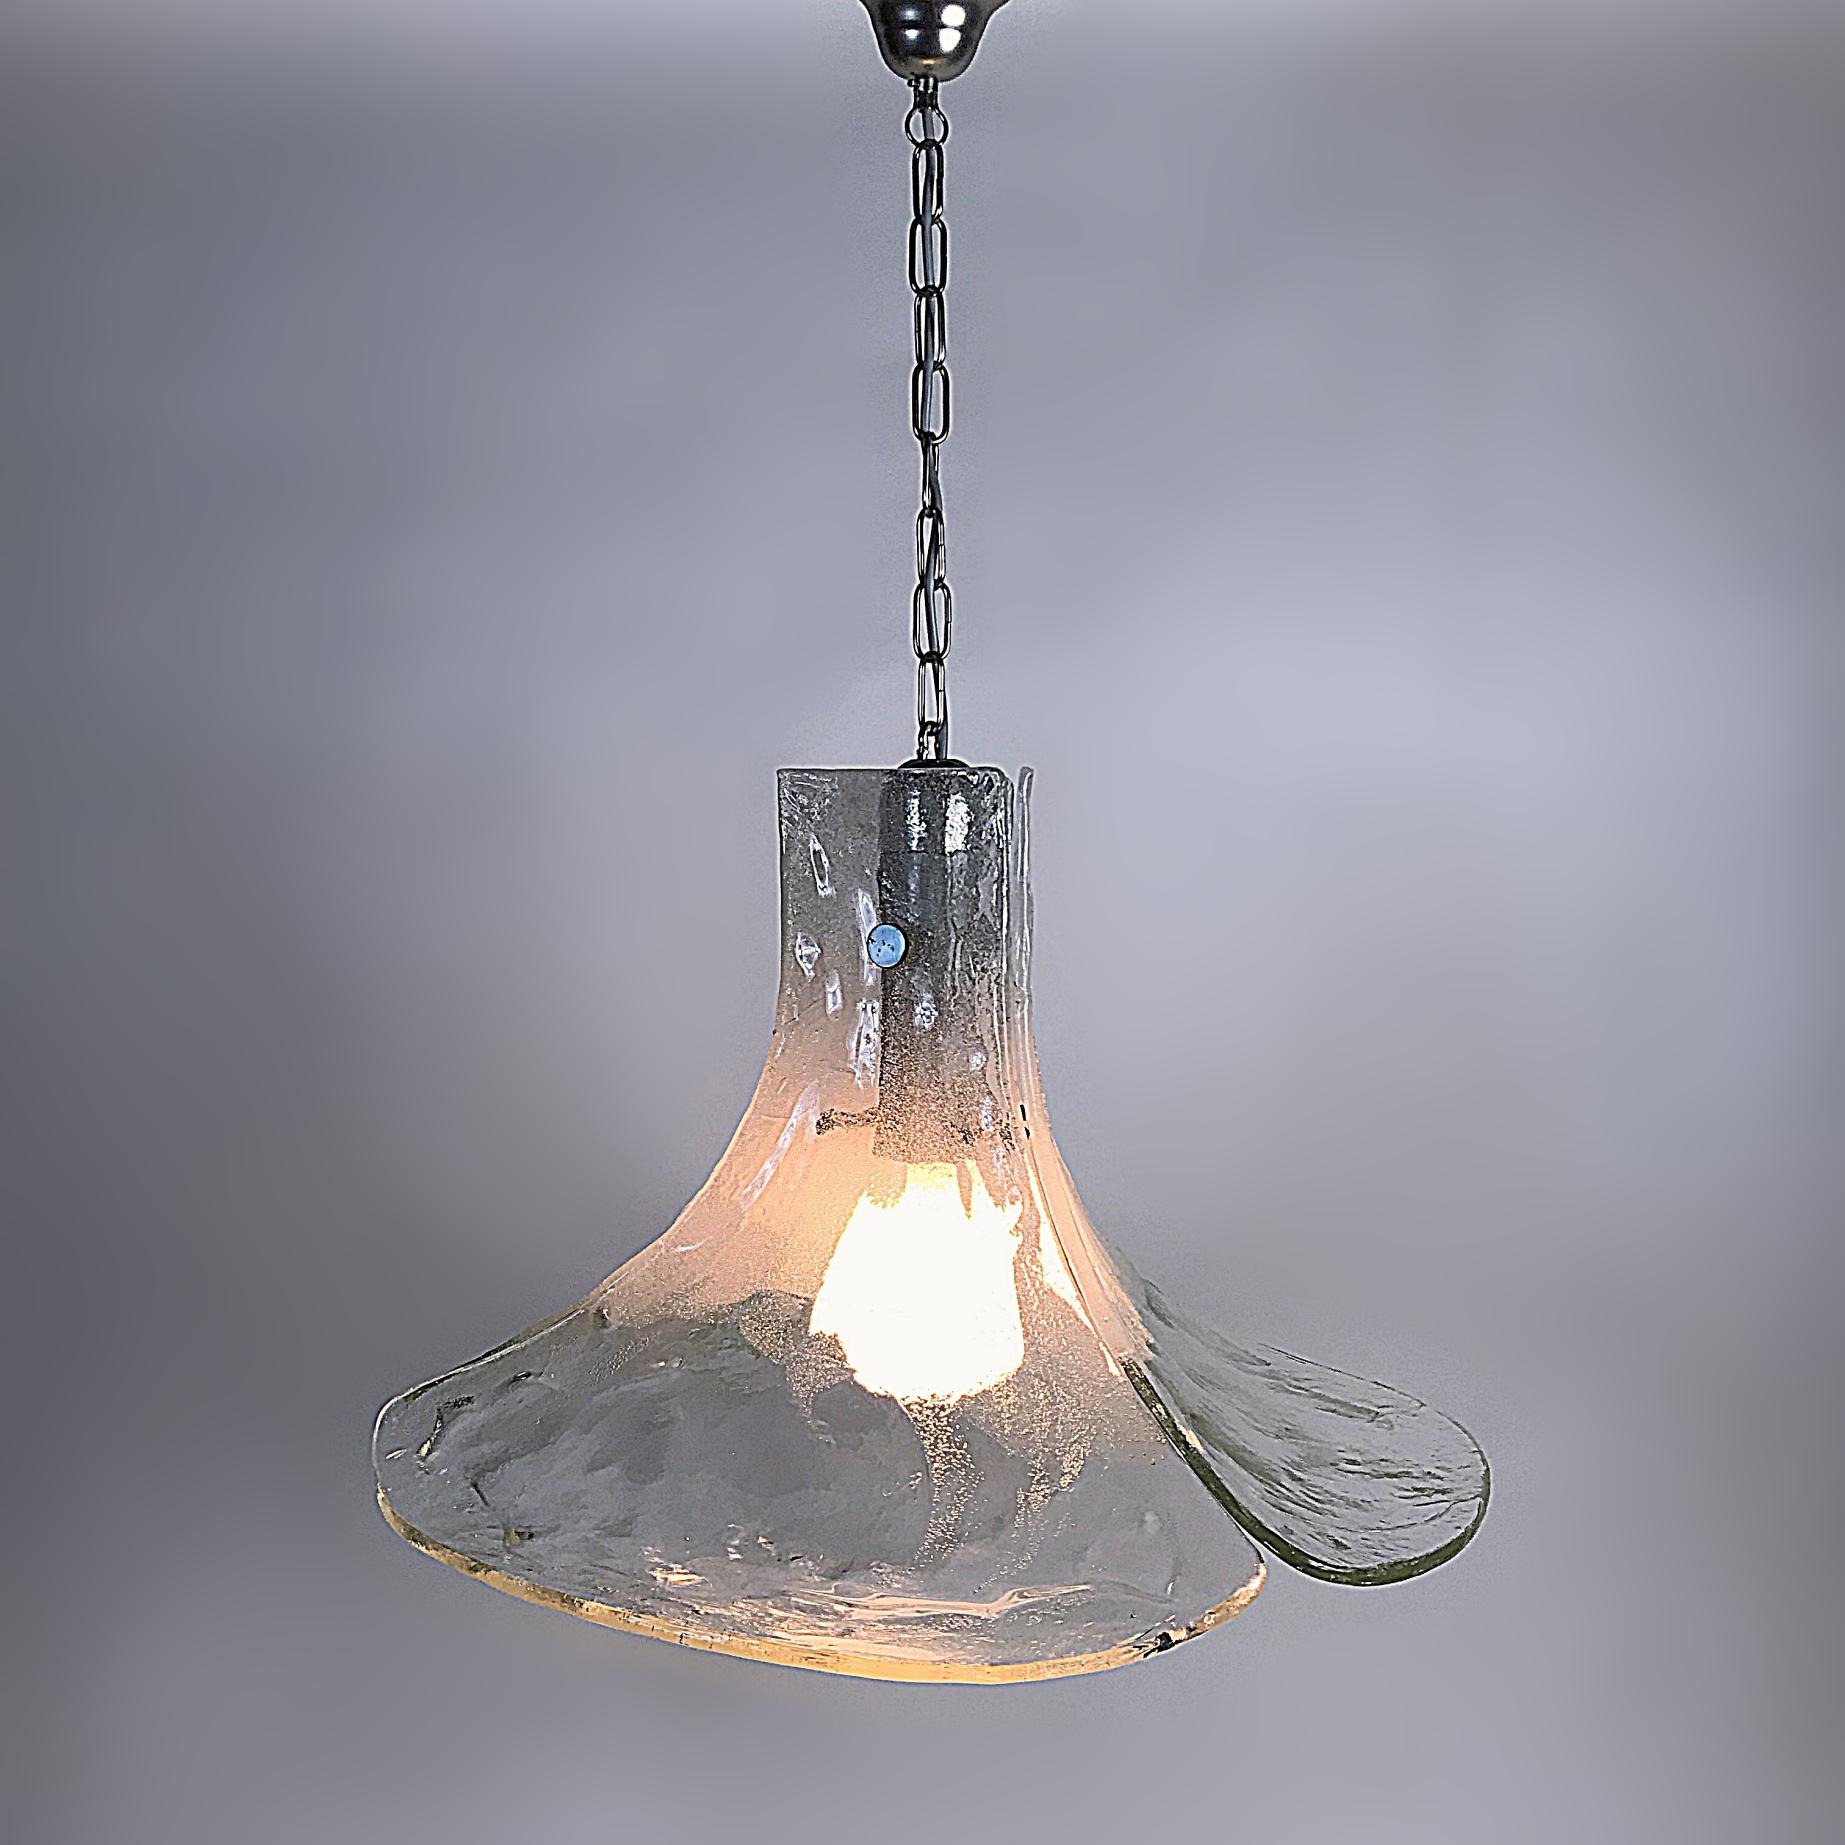 Schöne mundgeblasene Mid-Century Modern Pendelleuchte von J. T. Kalmar aus den 1970er Jahren. Er ist mit drei großen, dicken, strukturierten Murano-Eisgläsern und Chrombeschlägen ausgestattet. Die Lampe ist in ausgezeichnetem Zustand mit einer